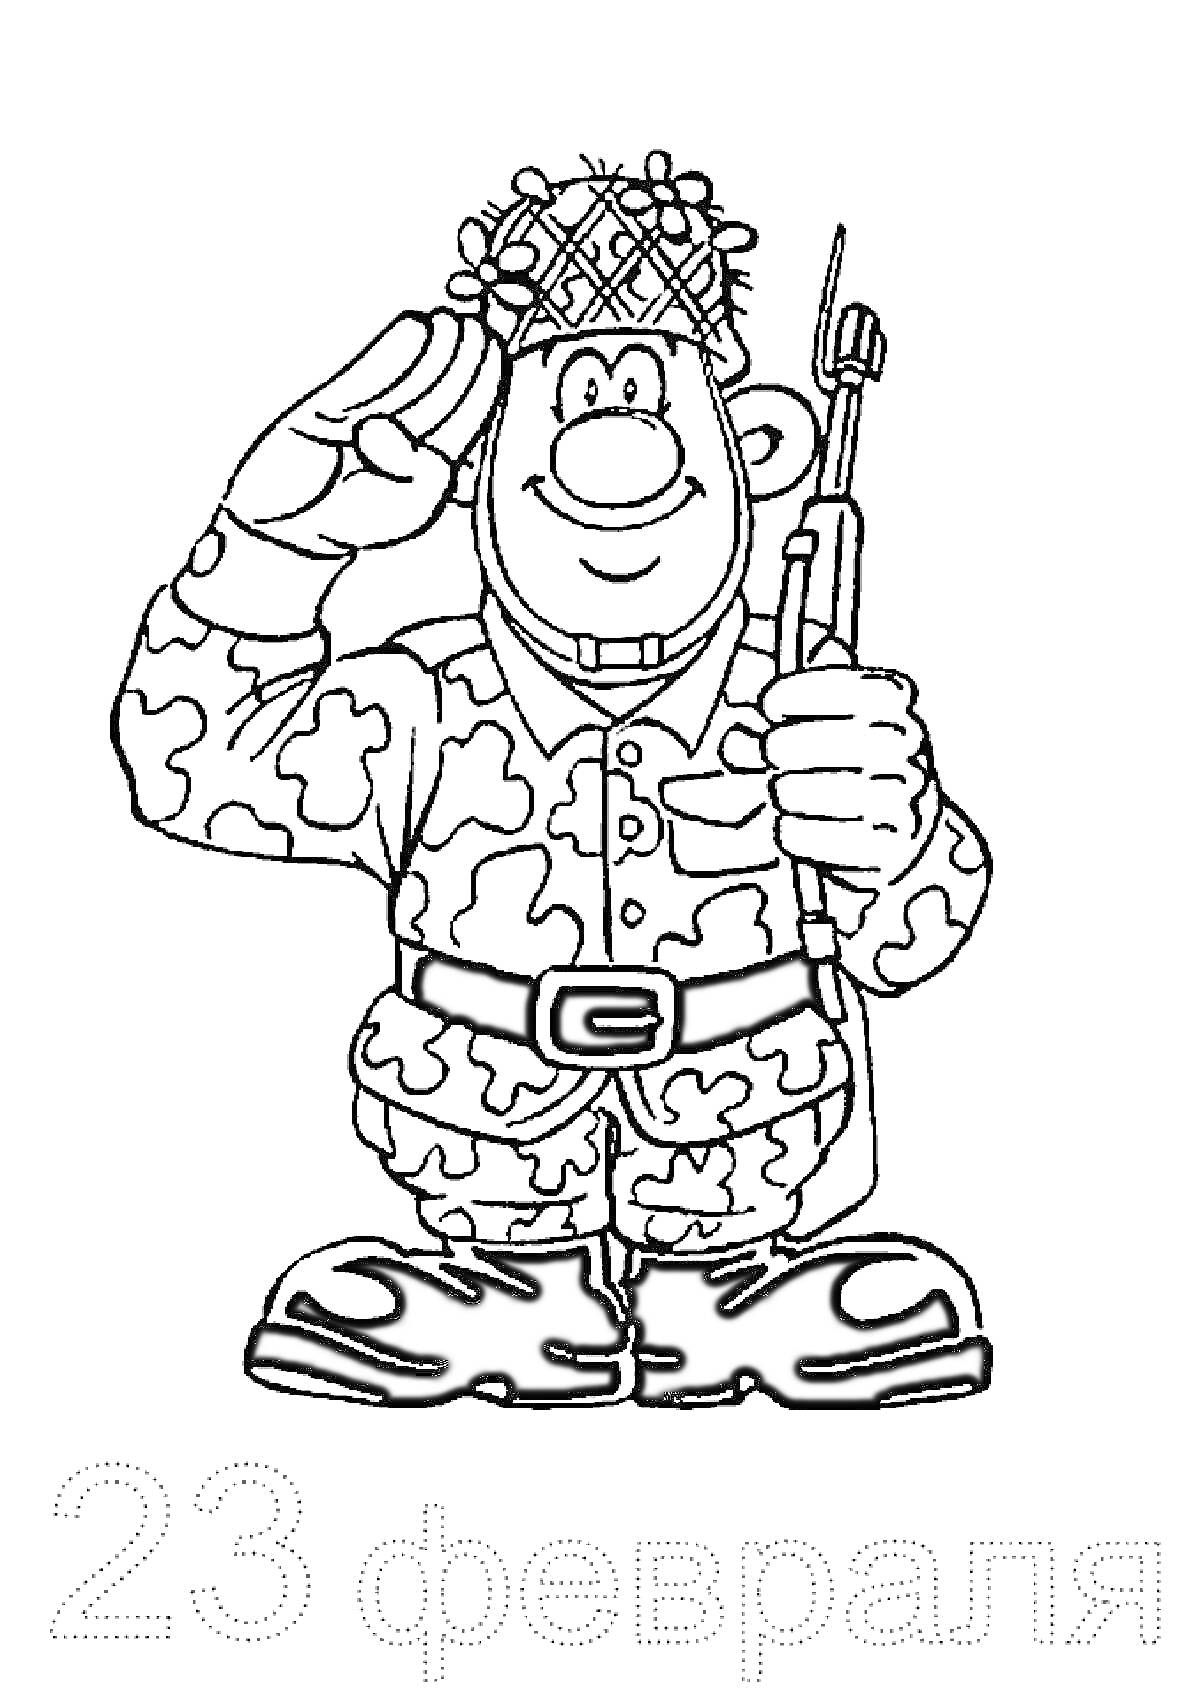 Солдат в военной форме с винтовкой и надписью 